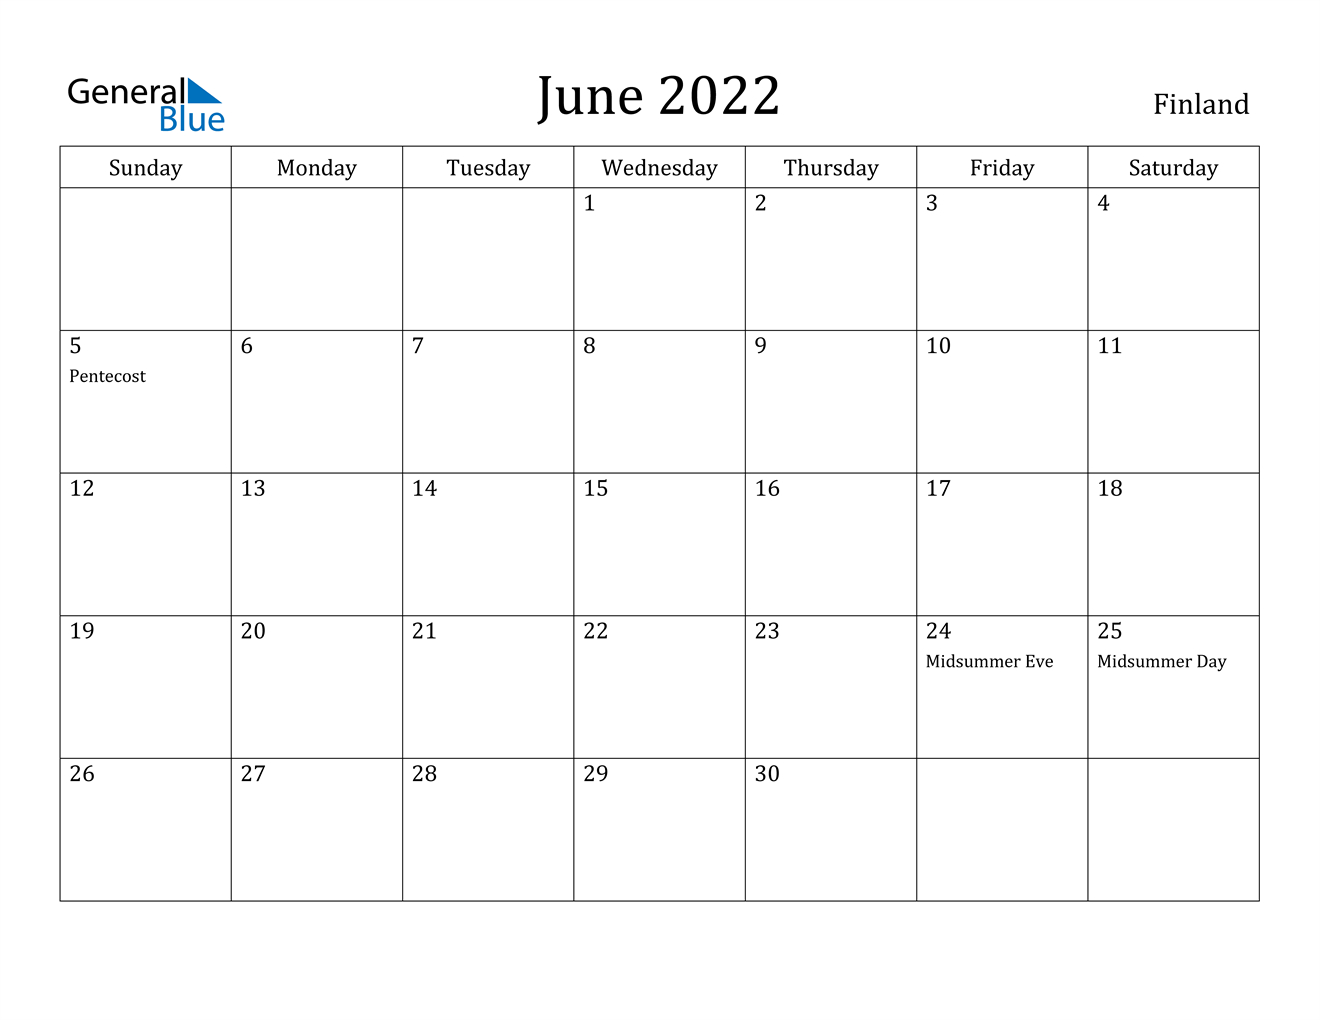 June 2022 Calendar - Finland